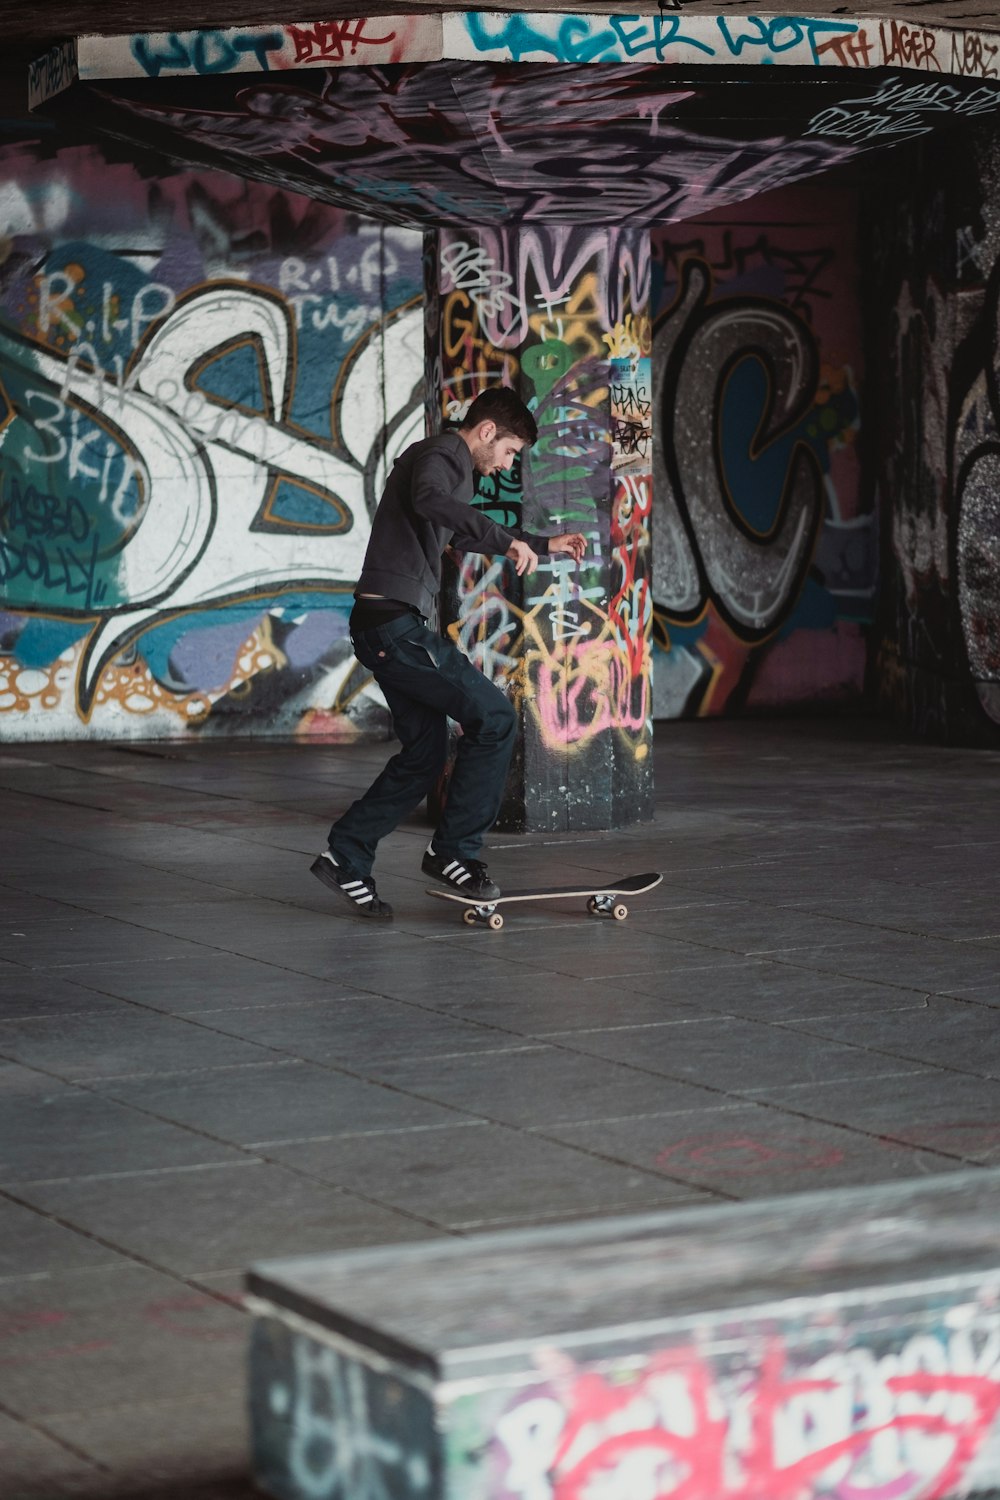 man playing on skateboard